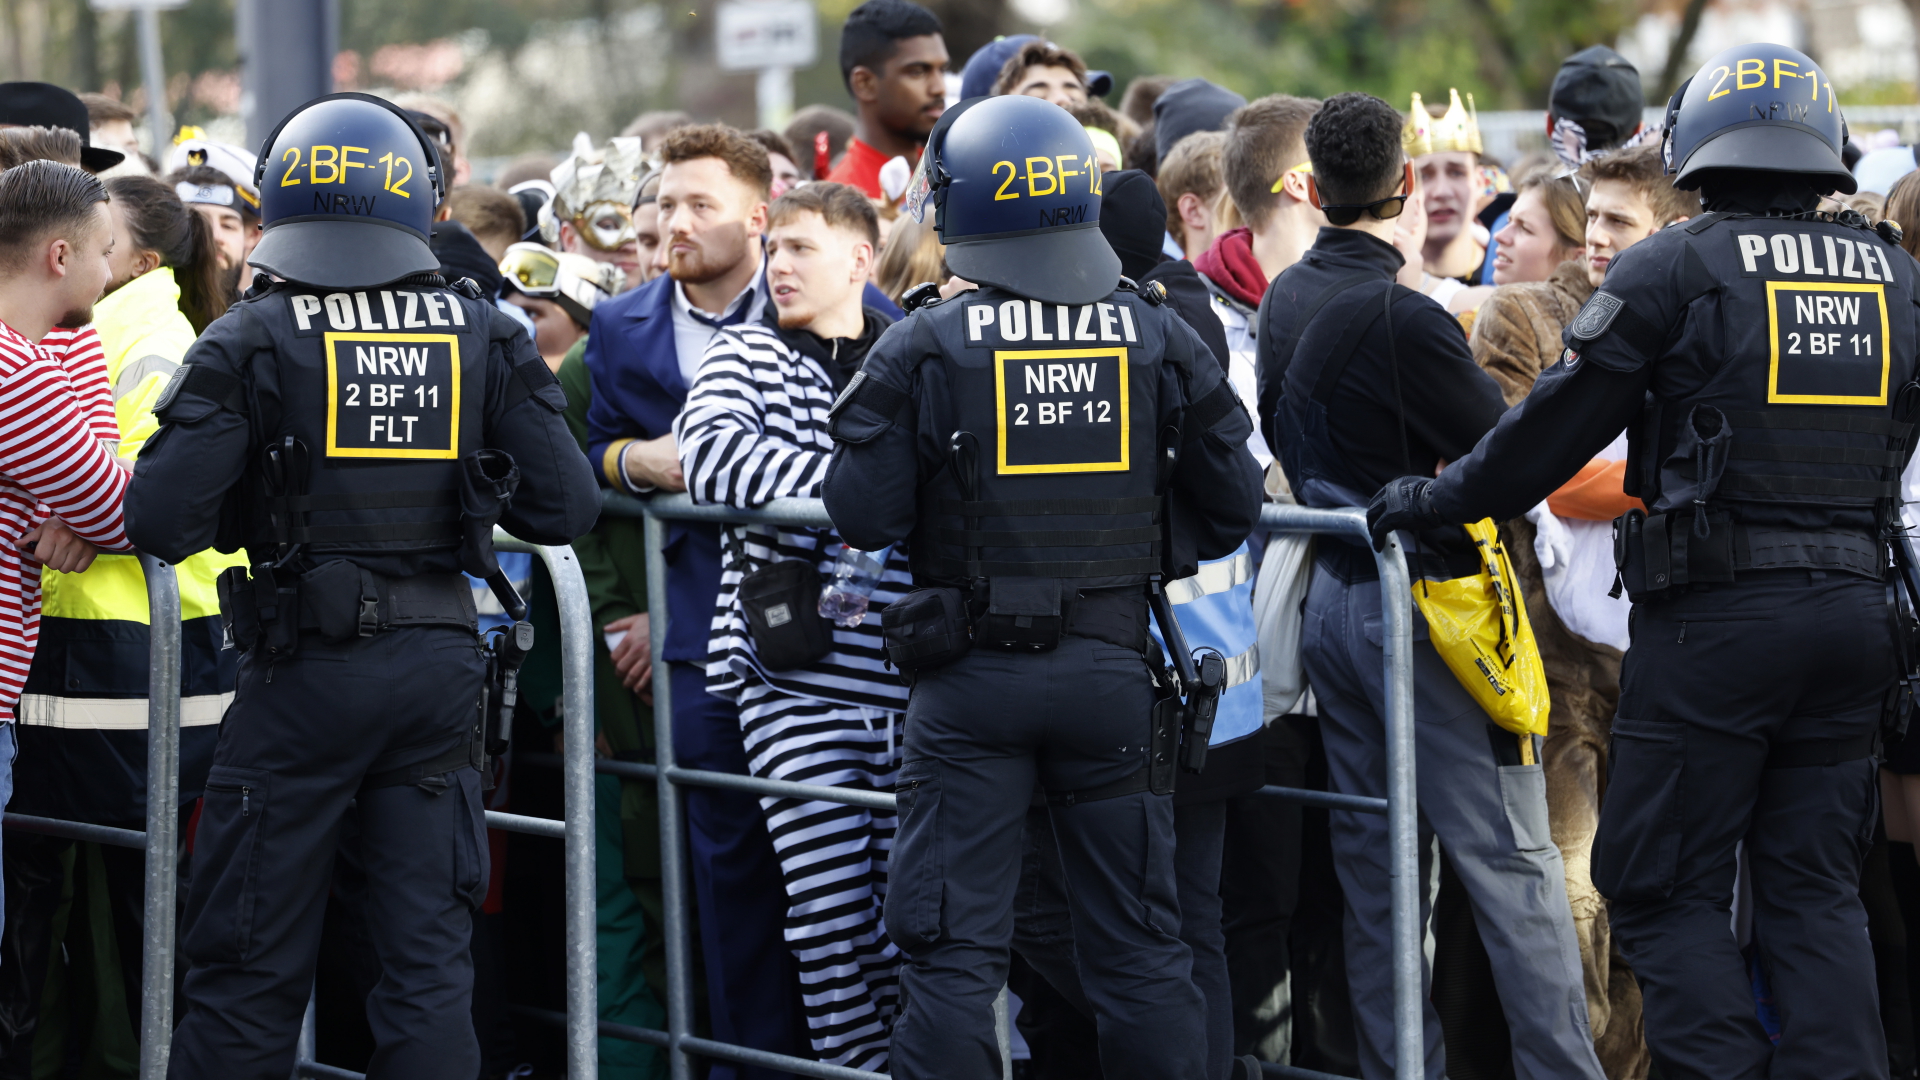 Polzeiabsperrung in Köln zum Karnevalsauftakt | dpa